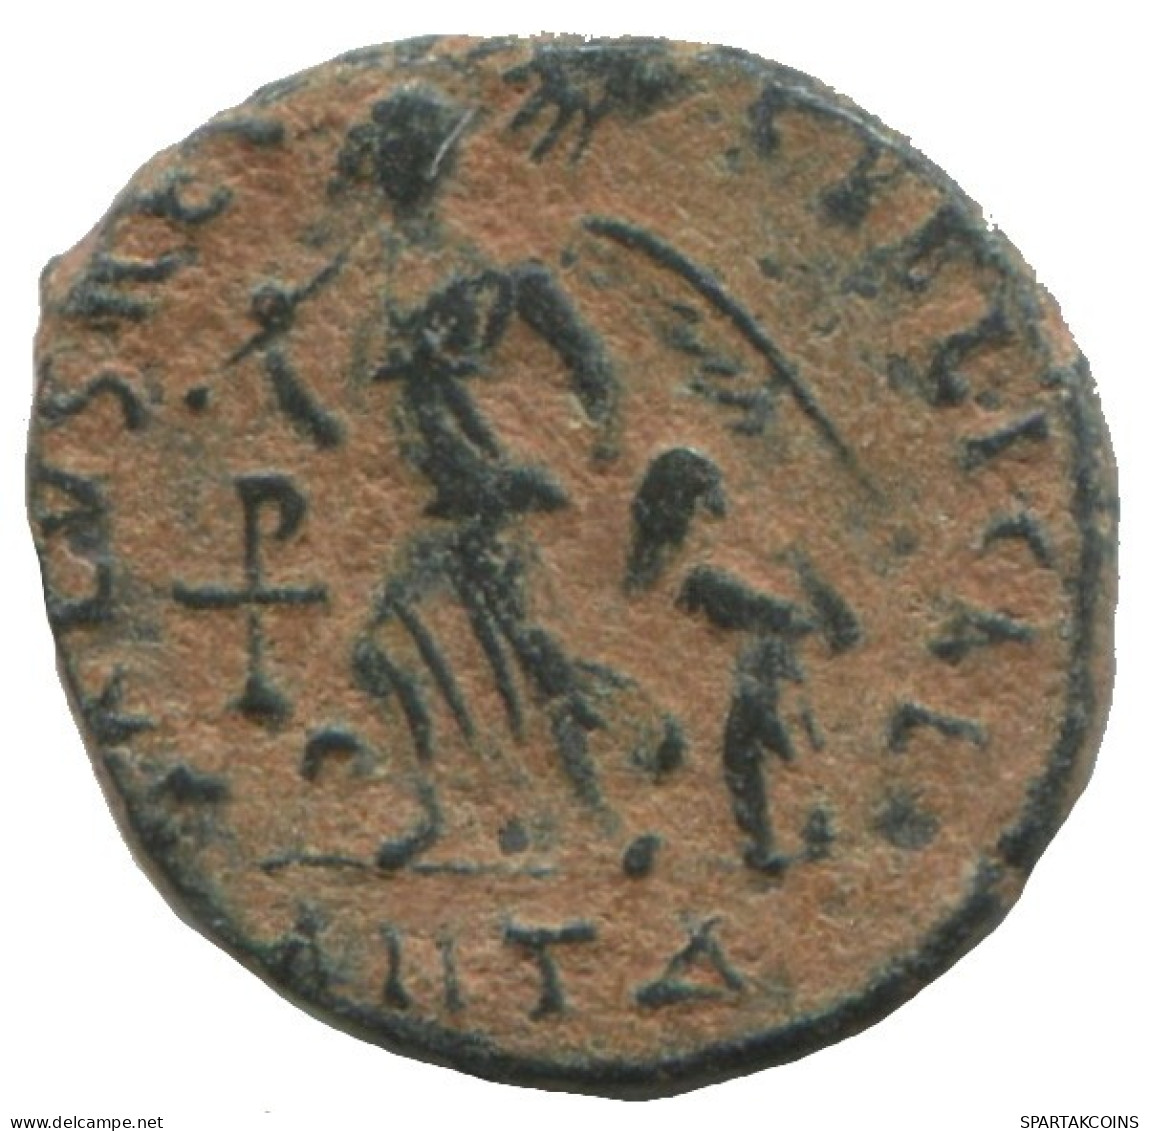 ARCADIUS ANTIOCHE ANTΔ AD388-391 SALVS REI-PVBLICAE 1.1g/13mm #ANN1353.9.U.A - La Fin De L'Empire (363-476)